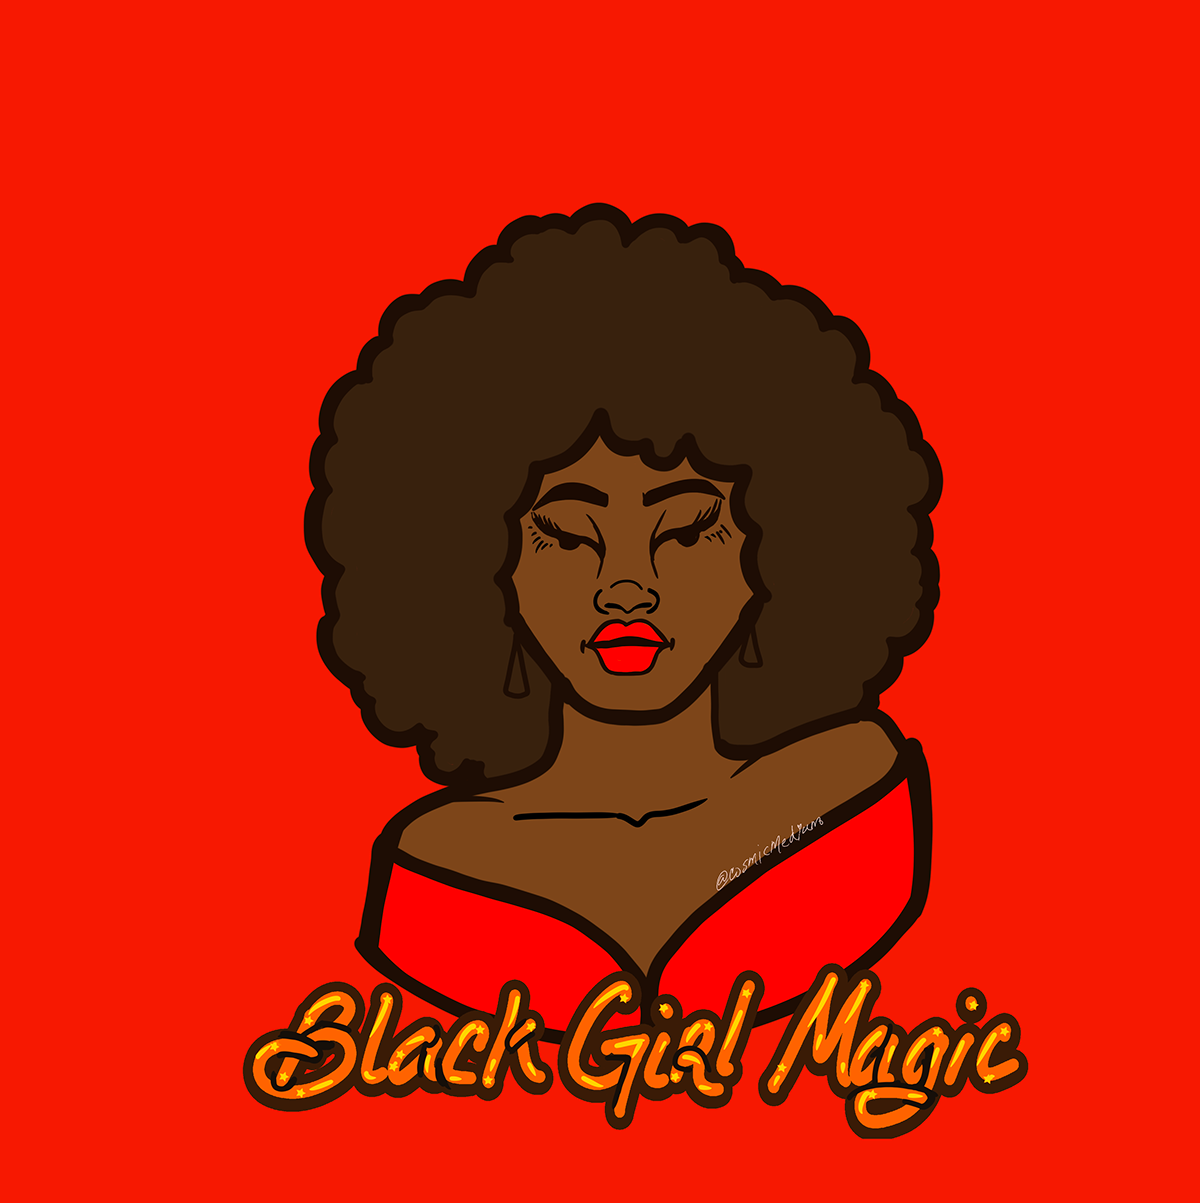 Black Girl Magic Illustration on Behance